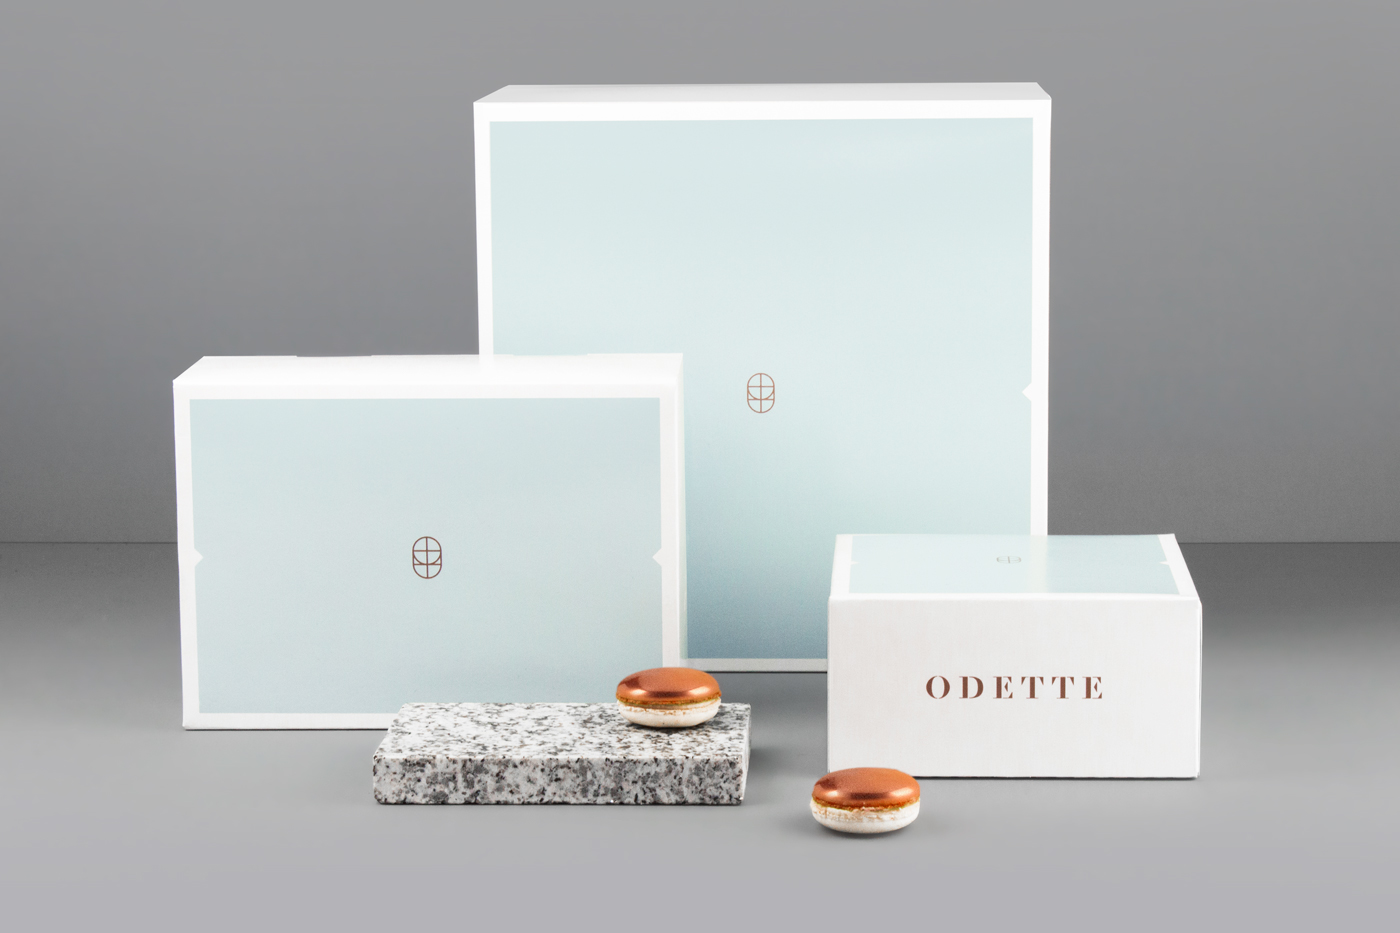 Odette 烘培面包店标志设计品牌VI形象设计1